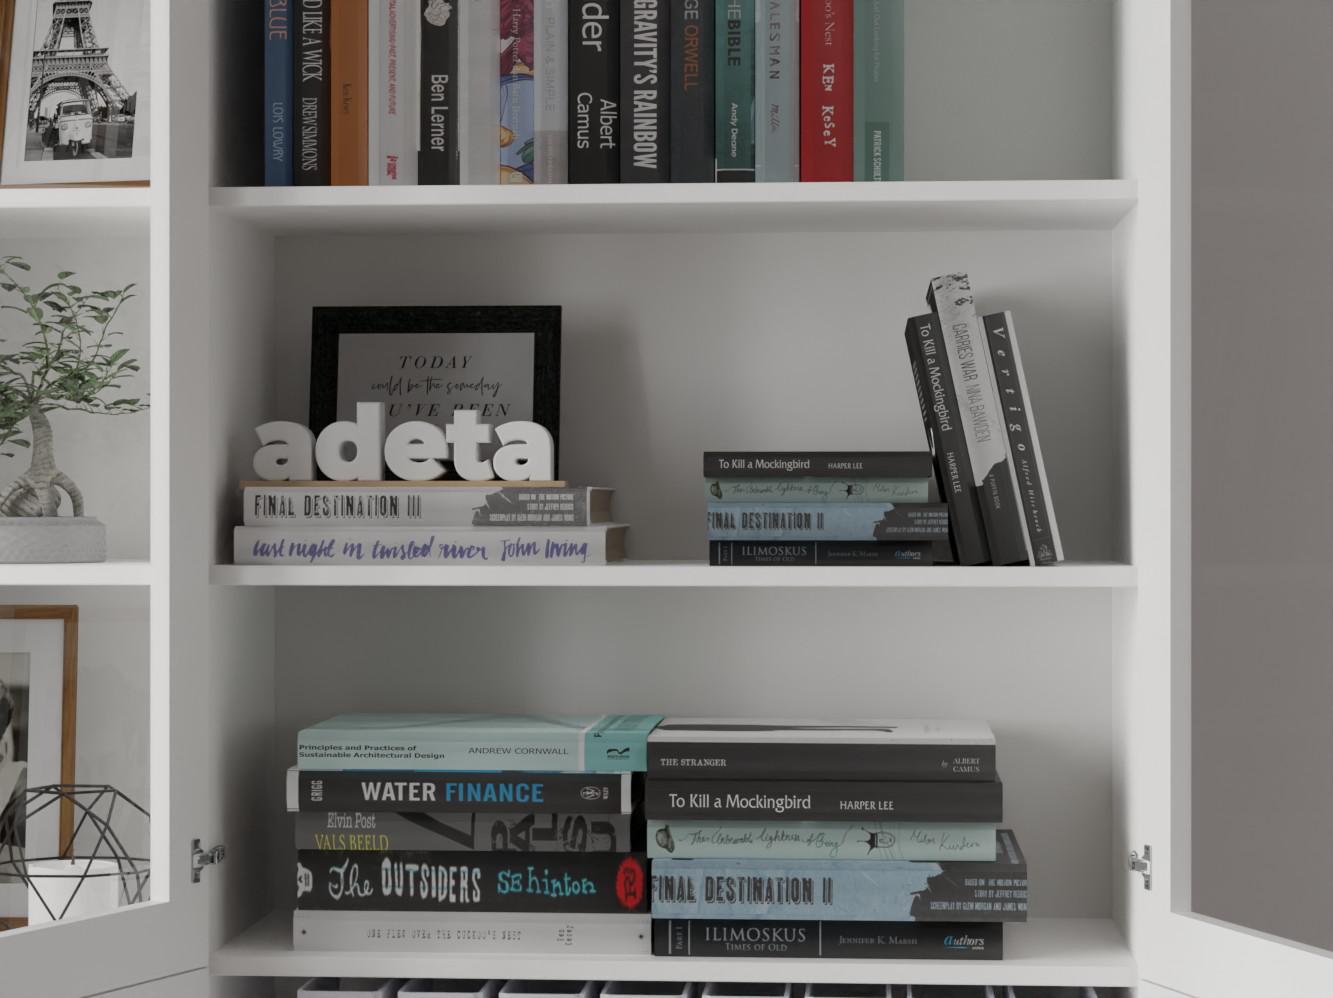 Изображение товара Книжный шкаф Билли 346 white ИКЕА (IKEA), 200x30x202 см на сайте adeta.ru